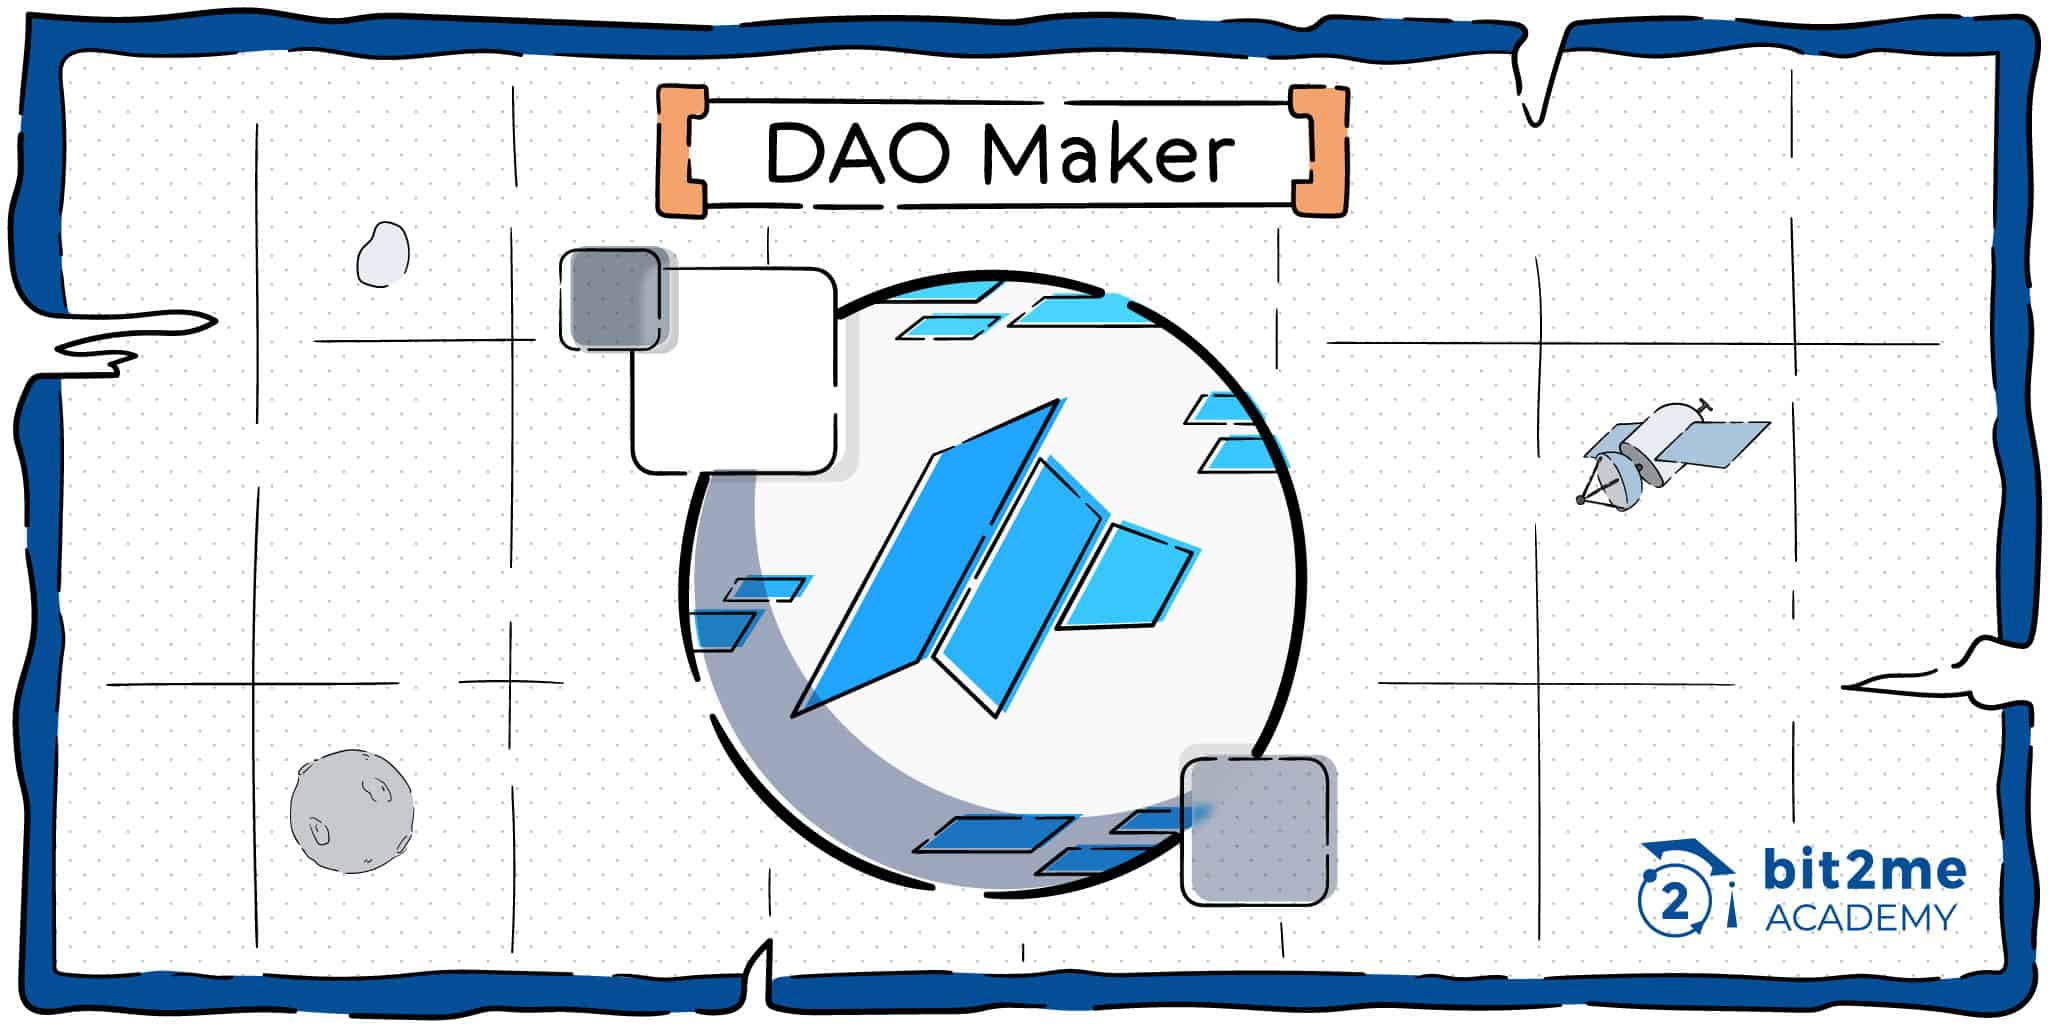 DAO Maker una plataforma para el lanzamiento de proyectos mediante ICO